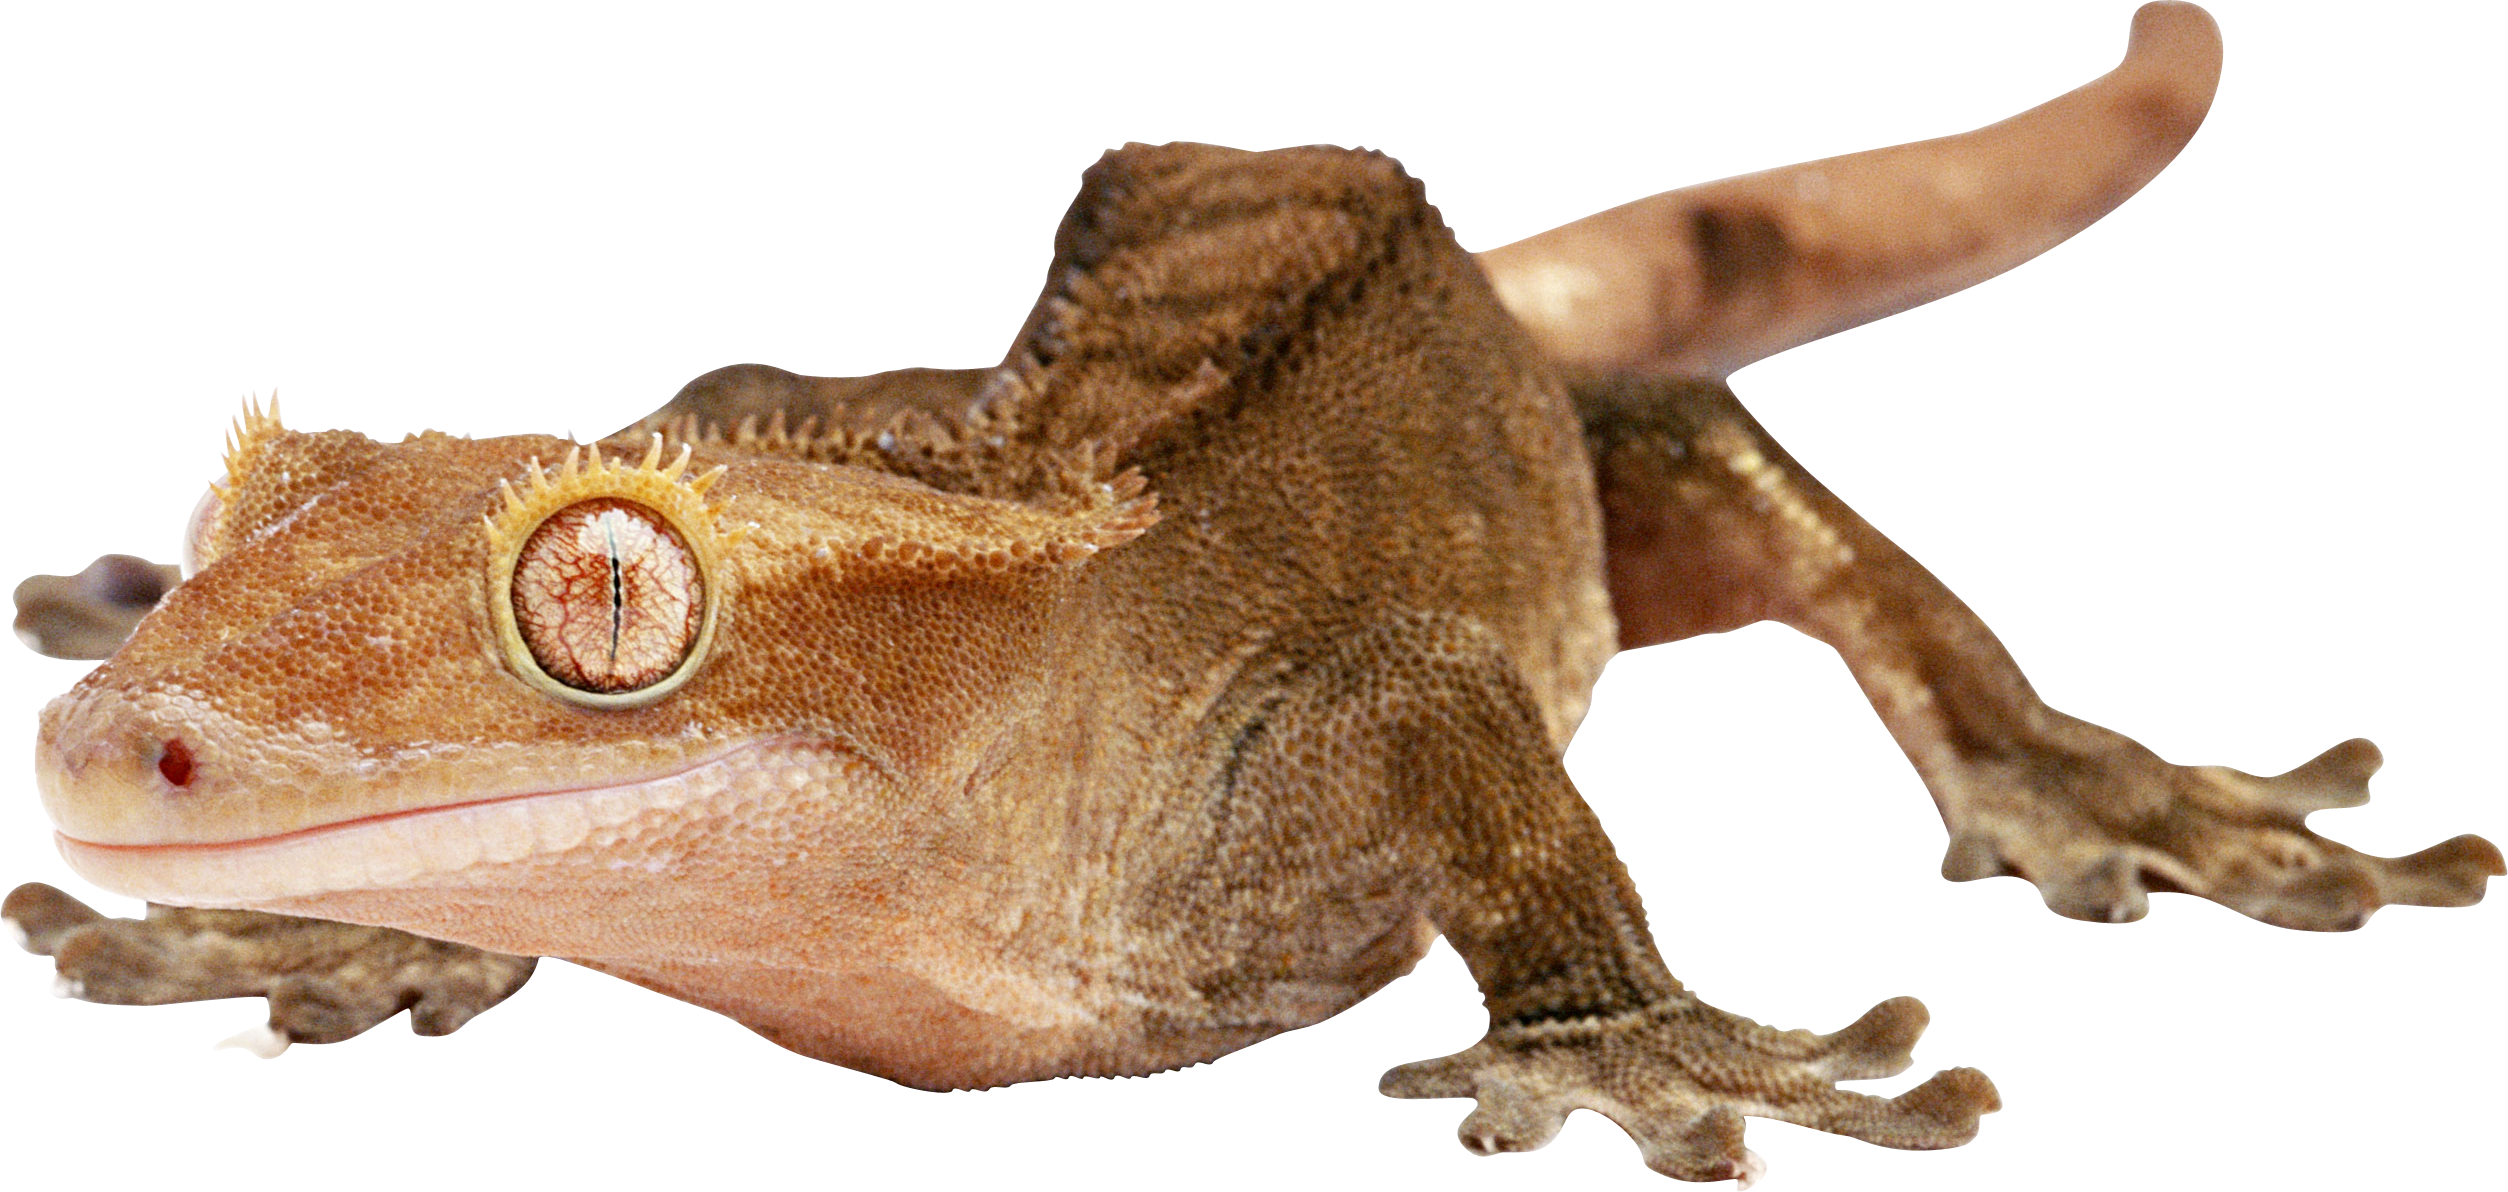 lizard clipart brown lizard